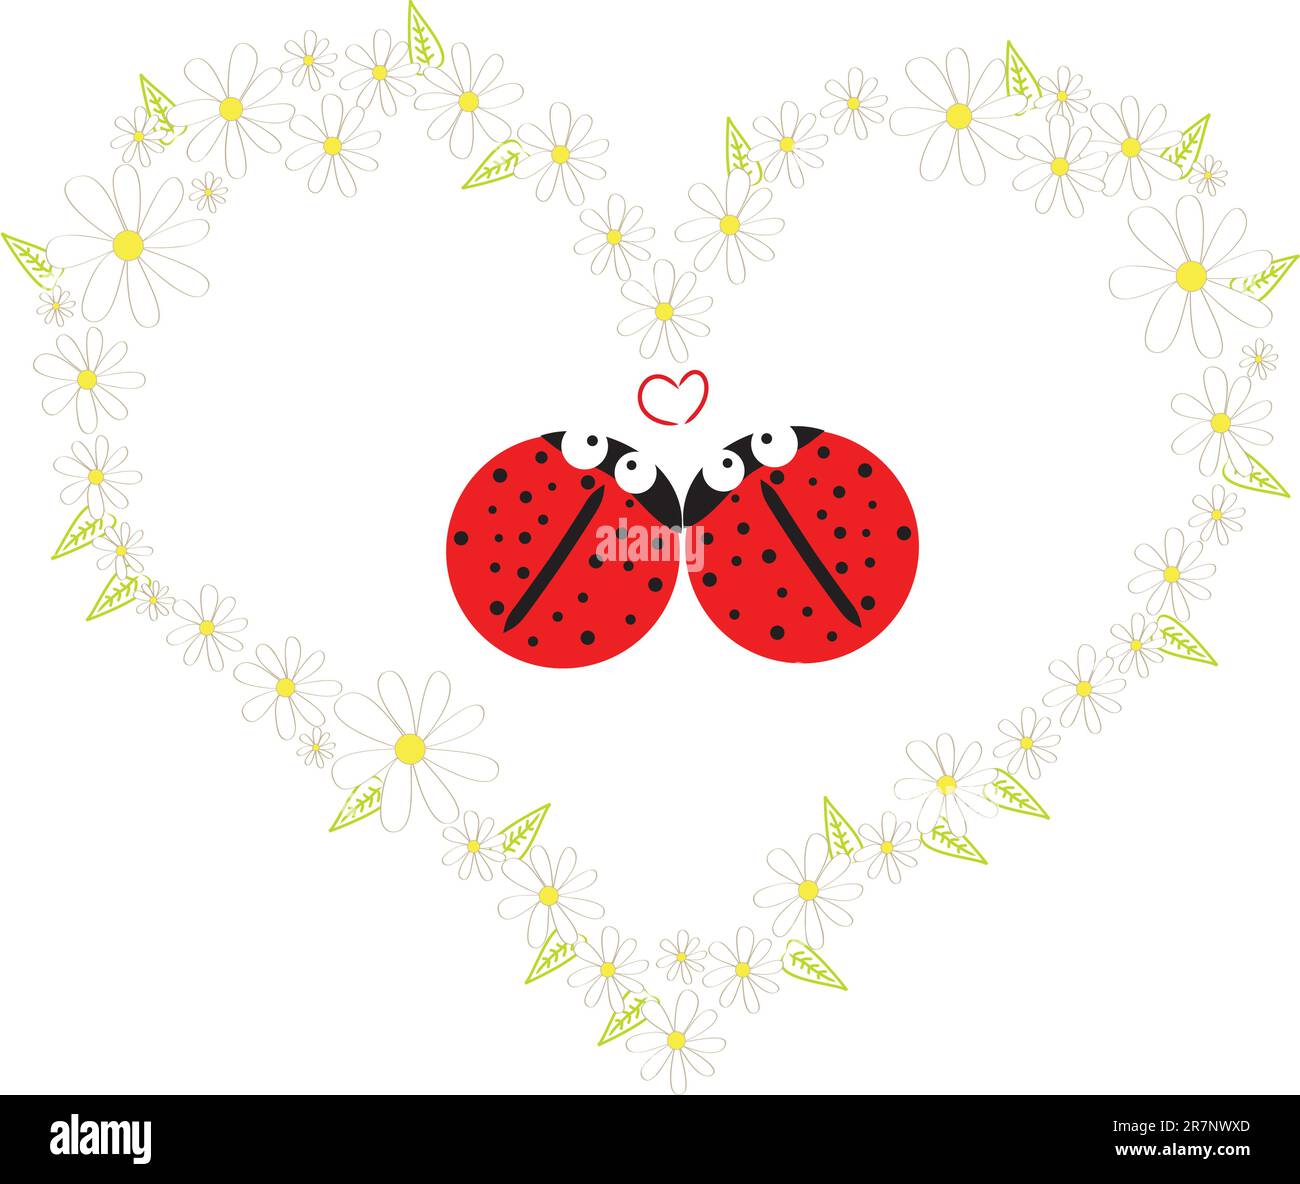 deux magnifiques coccinelles rouges en coeur de marguerite Illustration de Vecteur